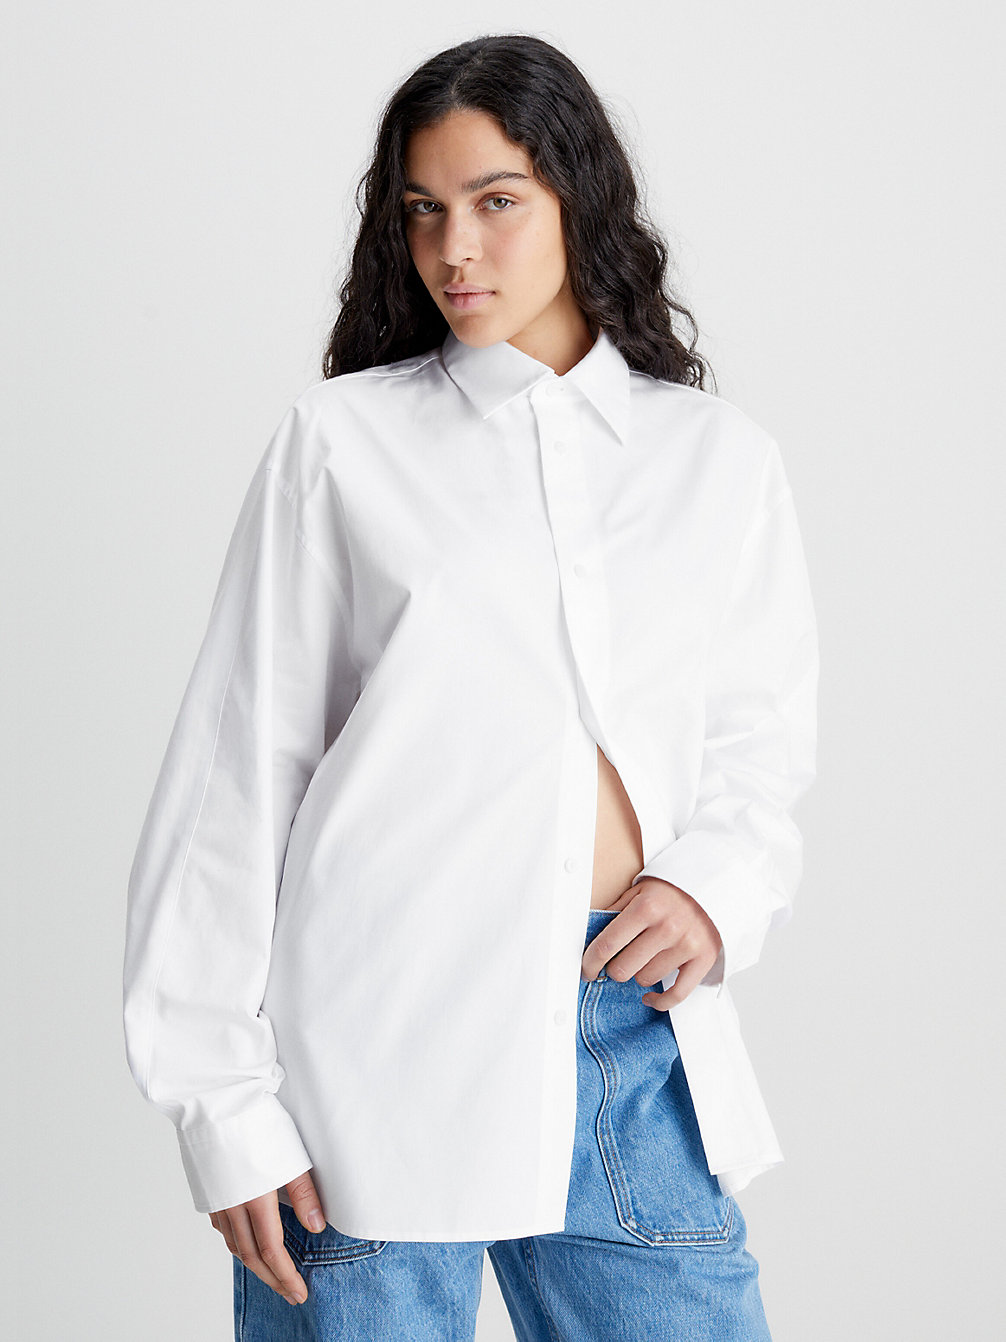 BRILLIANT WHITE Unisex T-Shirt Aus Baumwoll-Twill – CK Standards undefined Herren Calvin Klein